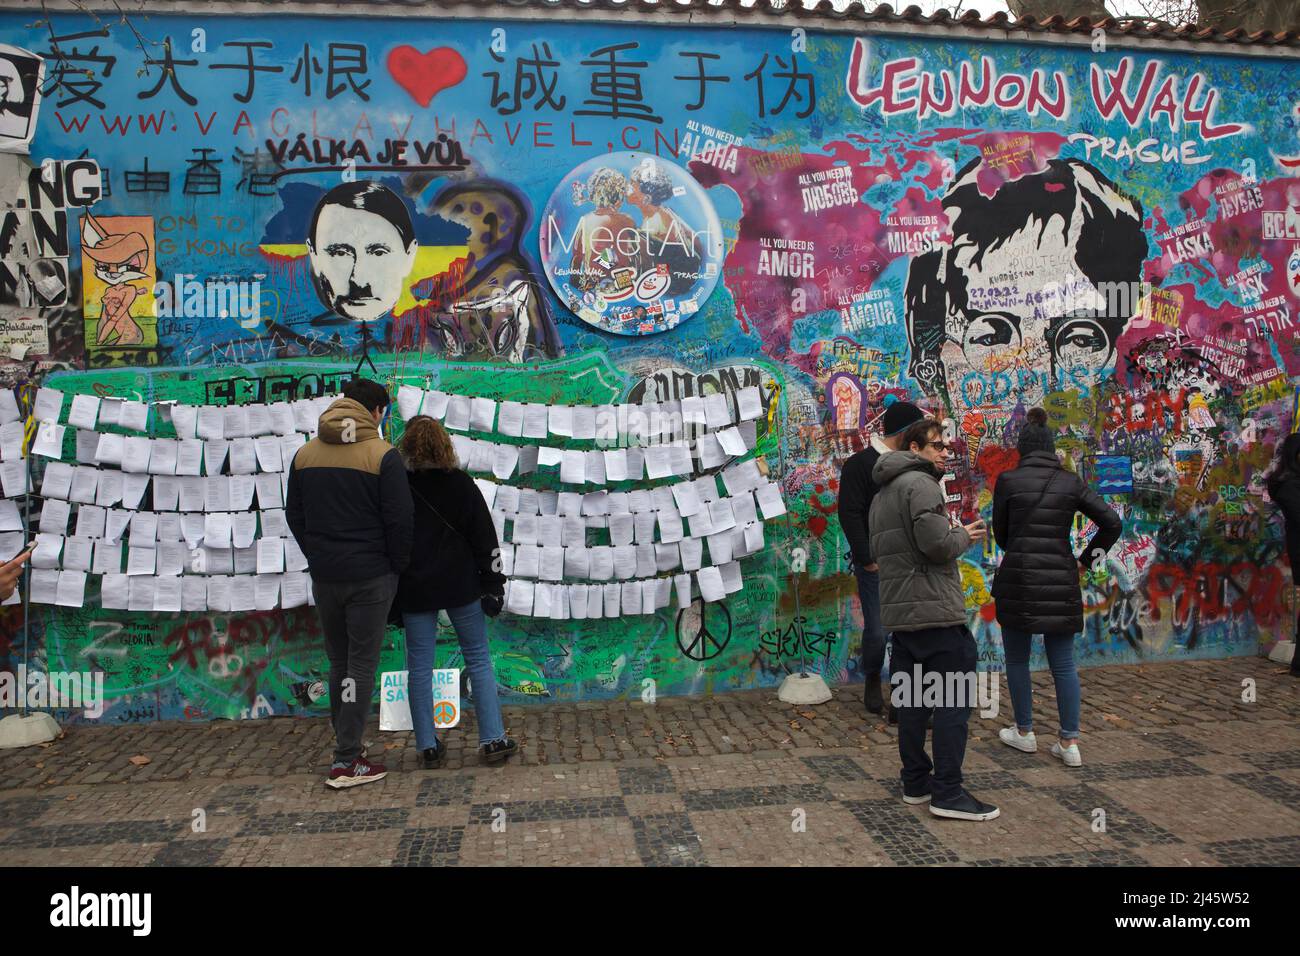 il presidente russo Vladimir Putin ha raffigurato accanto a John Lennon sul muro di Lennon (Lennonova zeď) a Praga, Repubblica Ceca. Il presidente Vladimir Putin è raffigurato con i caratteristici baffi da taglio e da spazzolino di Adolf Hitler collocati sulla sanguinosa mappa dell'Ucraina per protestare contro l'invasione russa dell'Ucraina nel 2022. L'iscrizione ceca sul capo di Putin 'Válka je vůl' (letterario significa: La guerra è un bue) è una linea di una canzone popolare della rock band ceca 'Synkopy 61'. I turisti nella foto del 2 aprile 2022 leggono i testi antguerra posti accanto al Muro di Lennon. Foto Stock